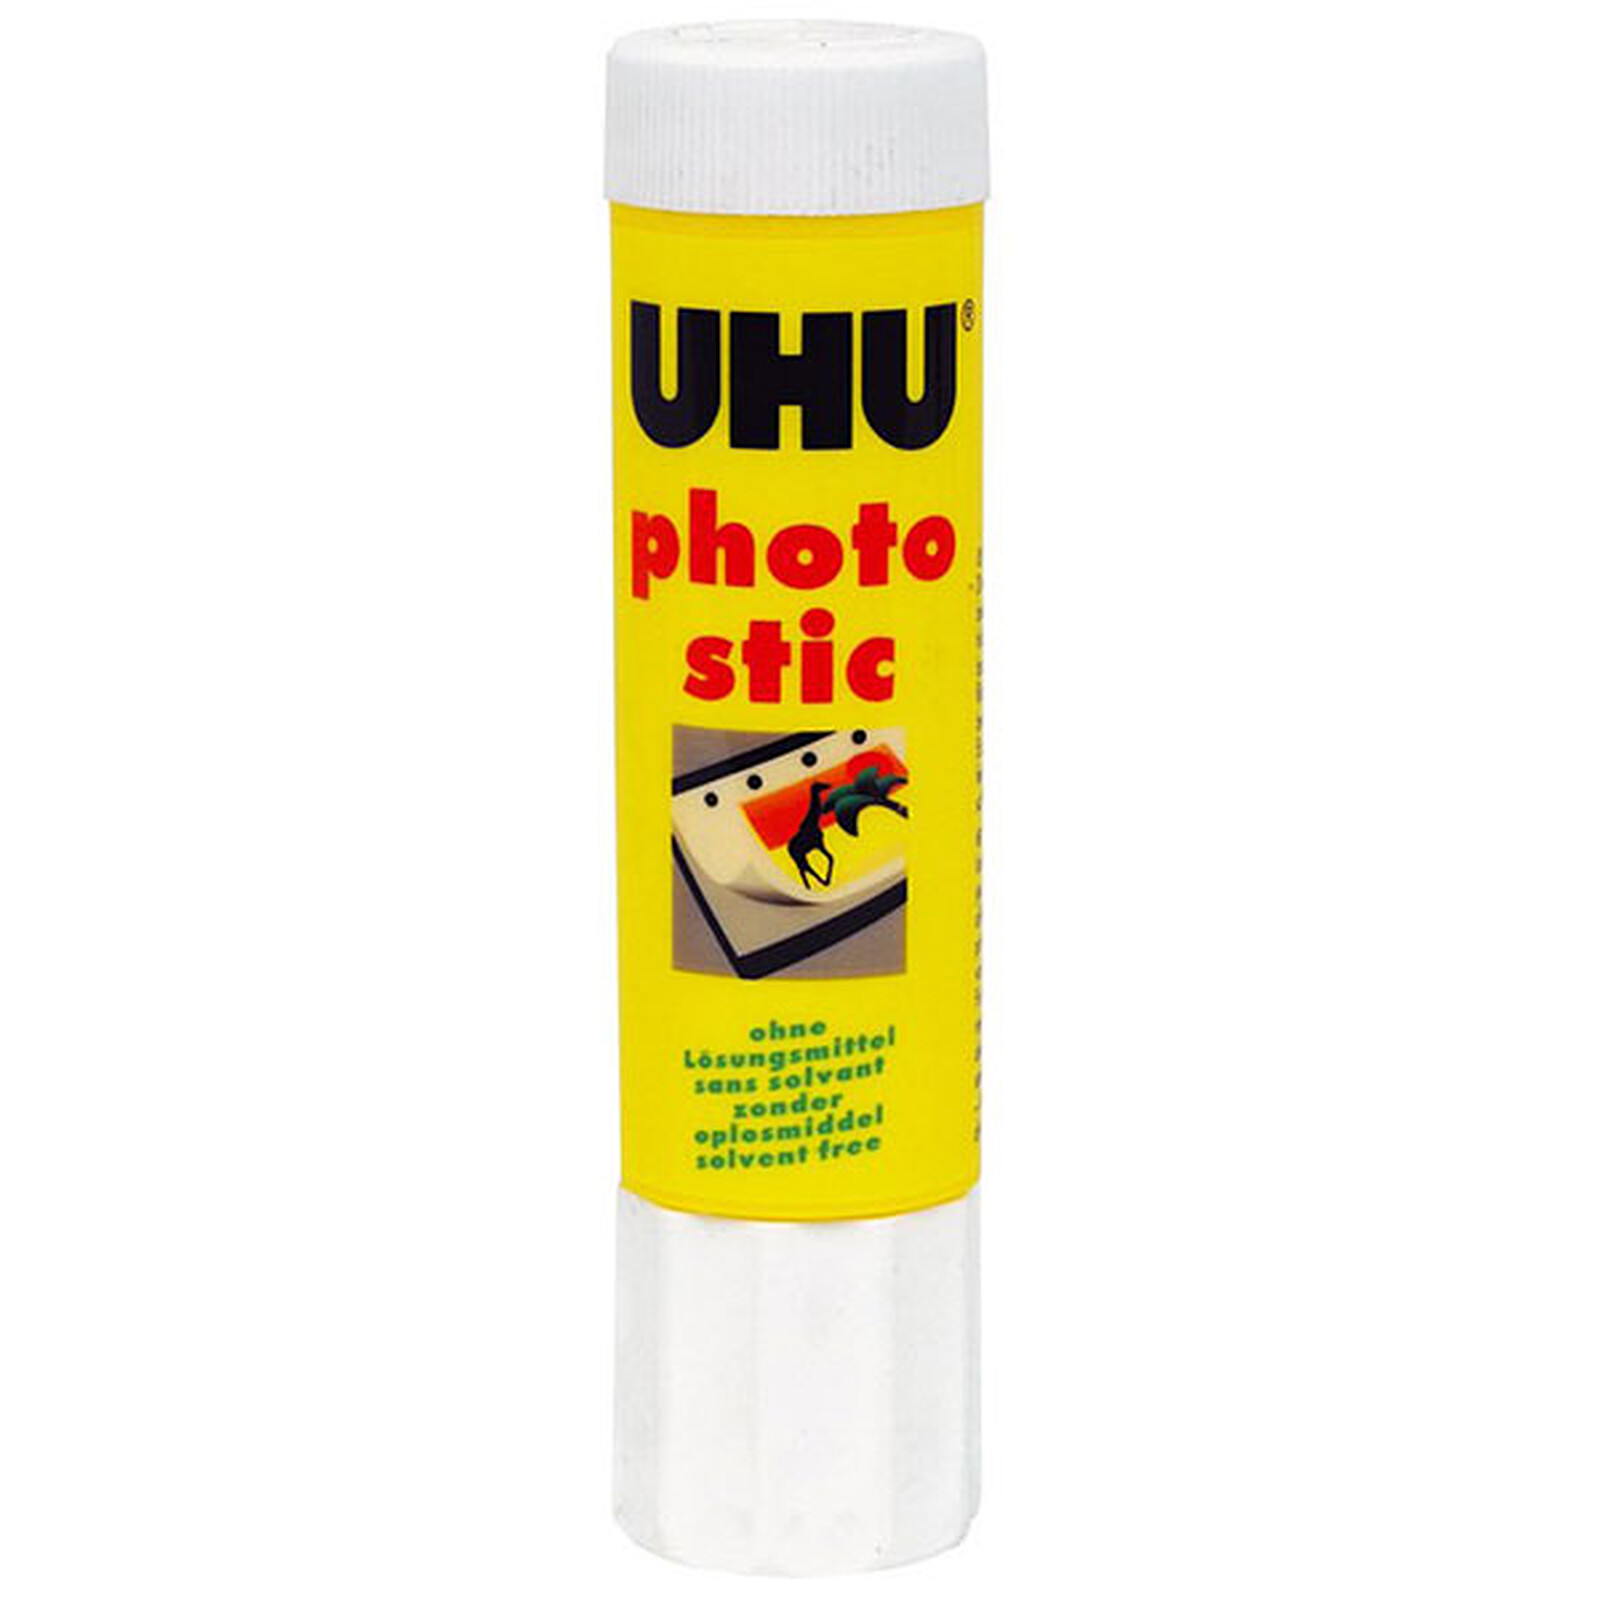 UHU - Stick de colle - 40g - Blanc - Lot de 12 - Achat / Vente